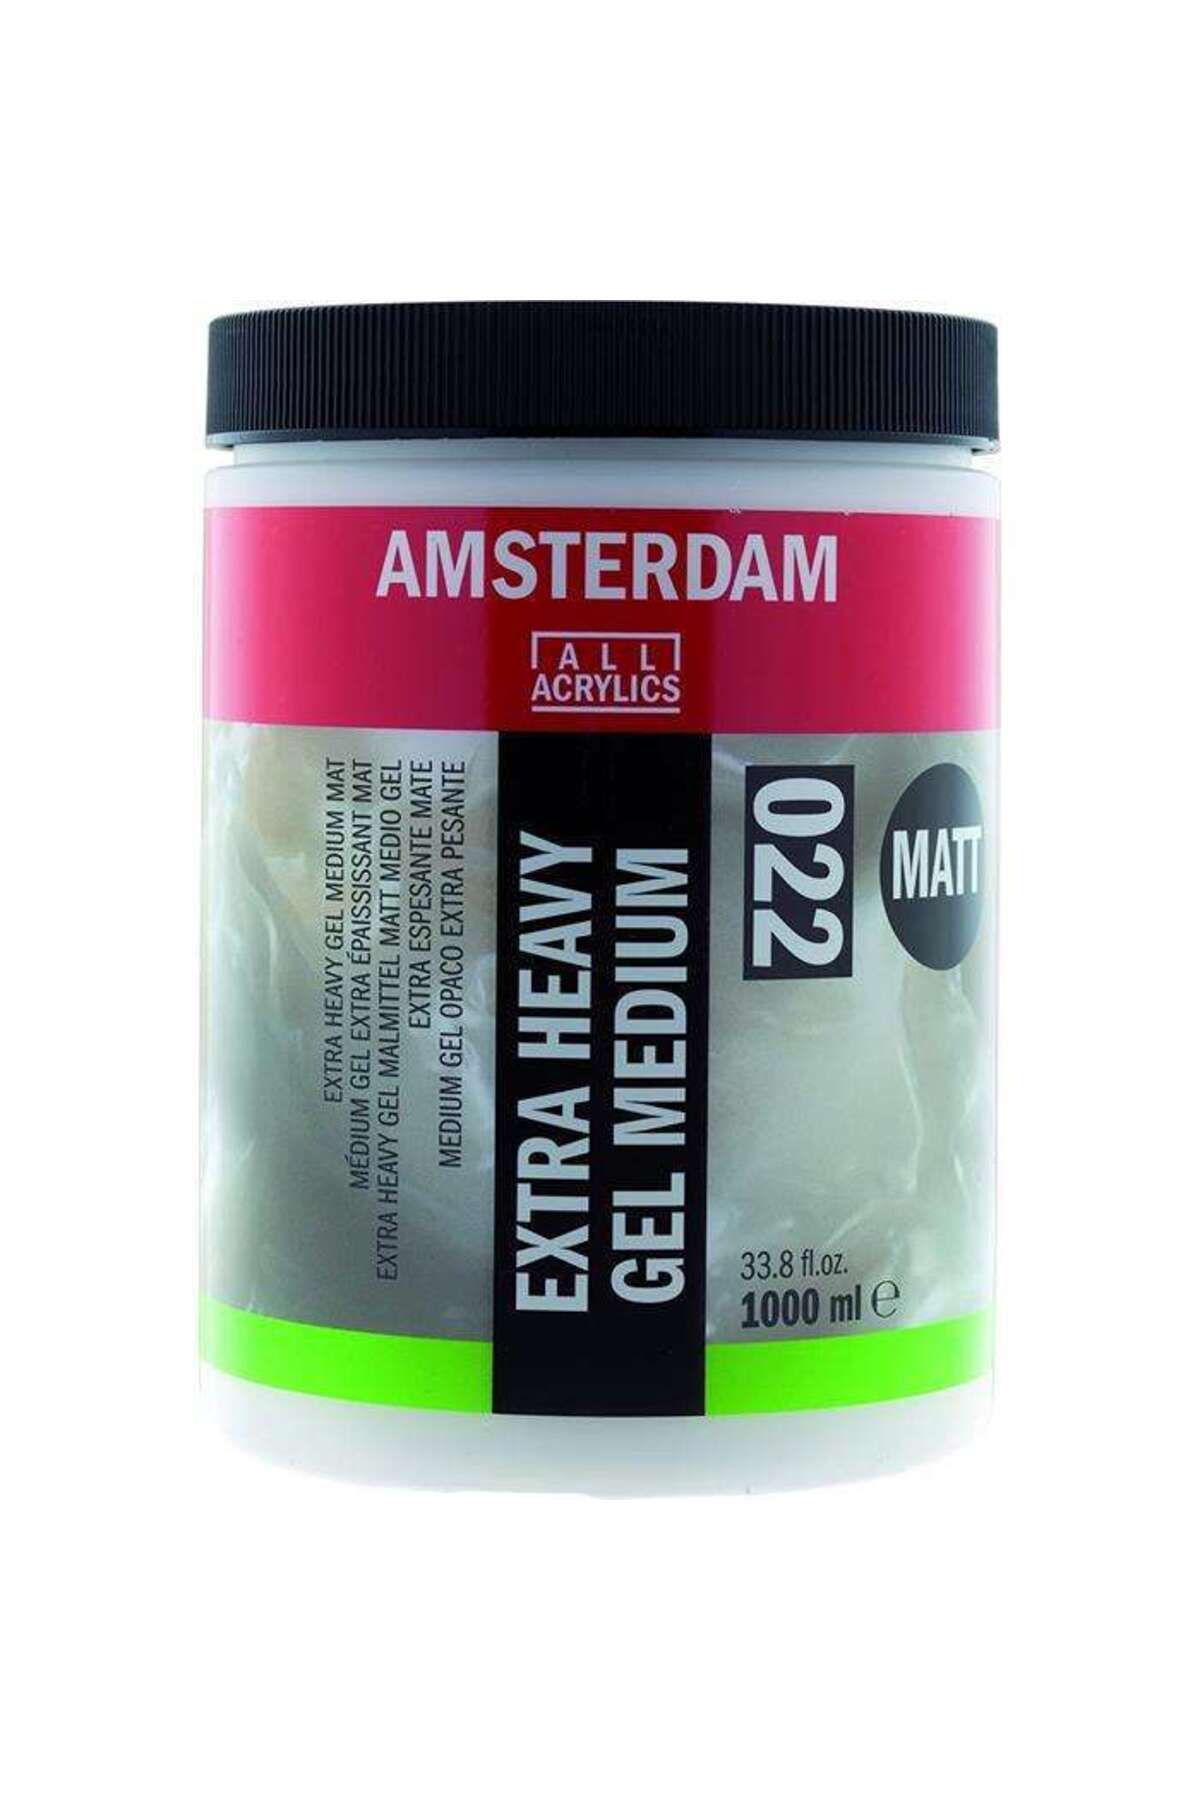 Amsterdam Talens Amsterdam Extra Heavy Gel Medium Matt 1000 ml